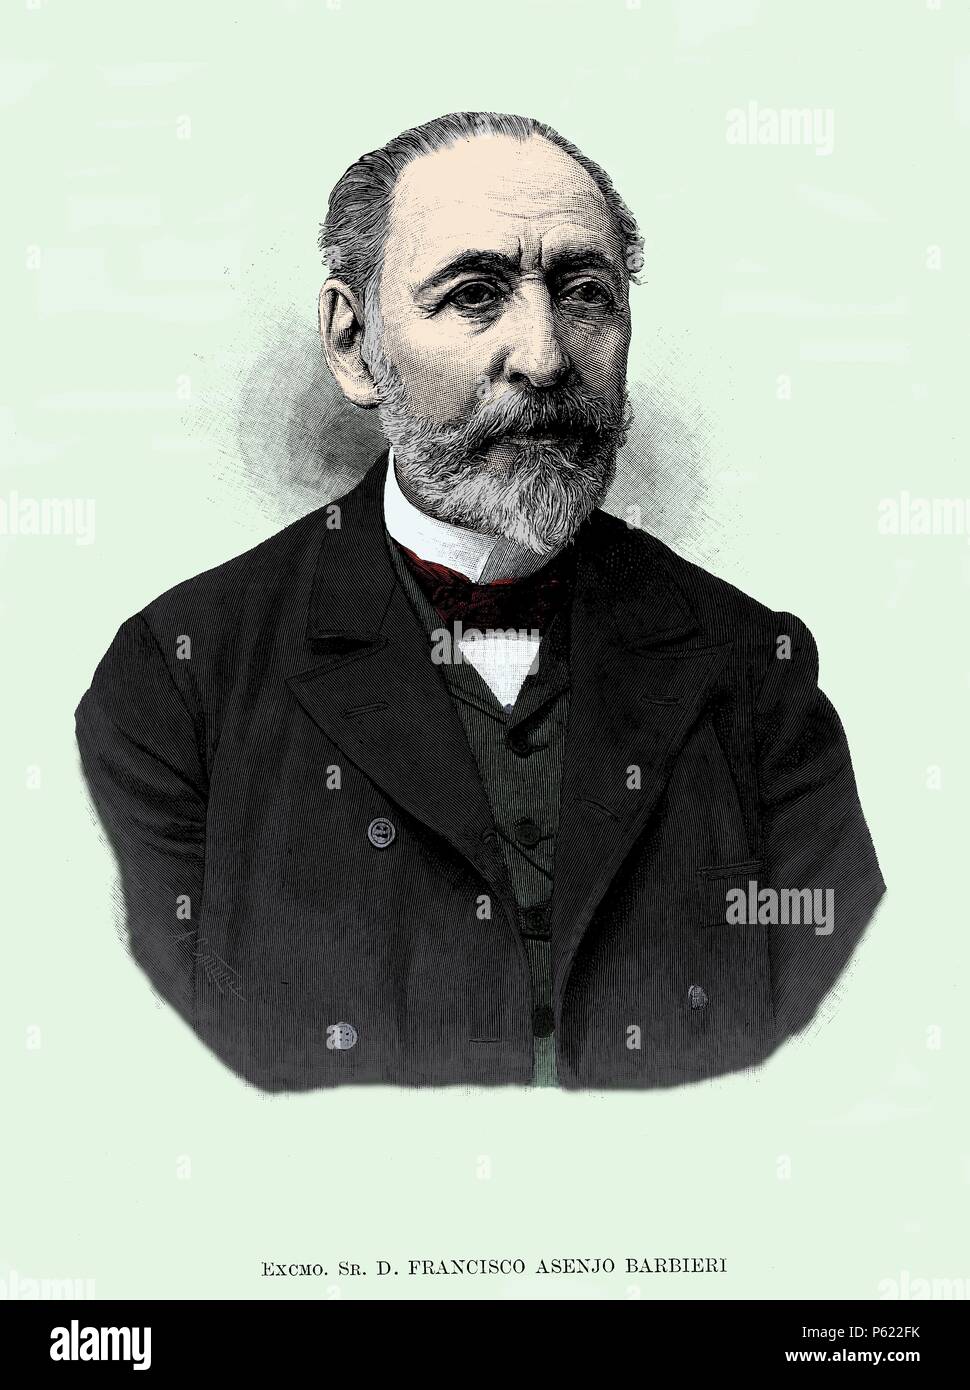 Francisco Asenjo Barbieri (Madrid, 1823-1894), compositor, historiador y musicólogo castellano. Grabado de 1892. Stock Photo